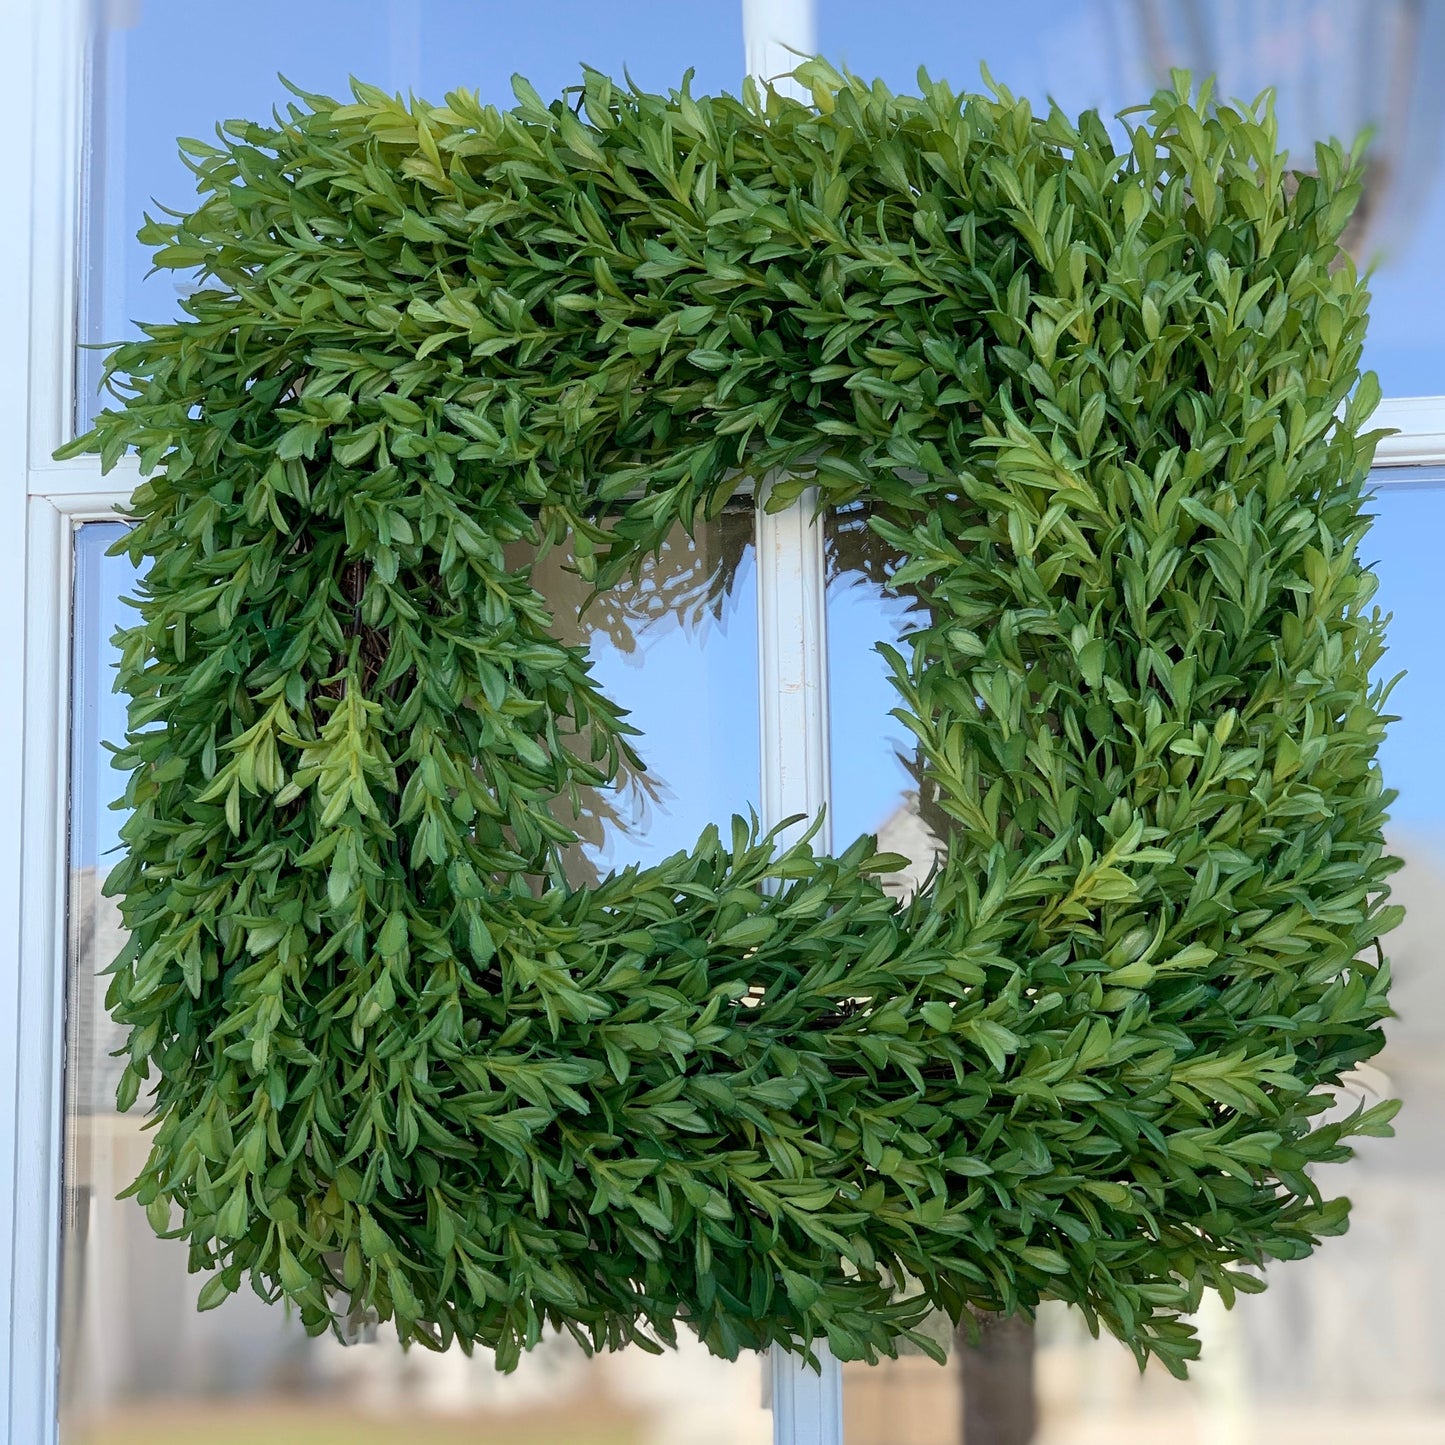 14” Square Tea Leaf Wreath